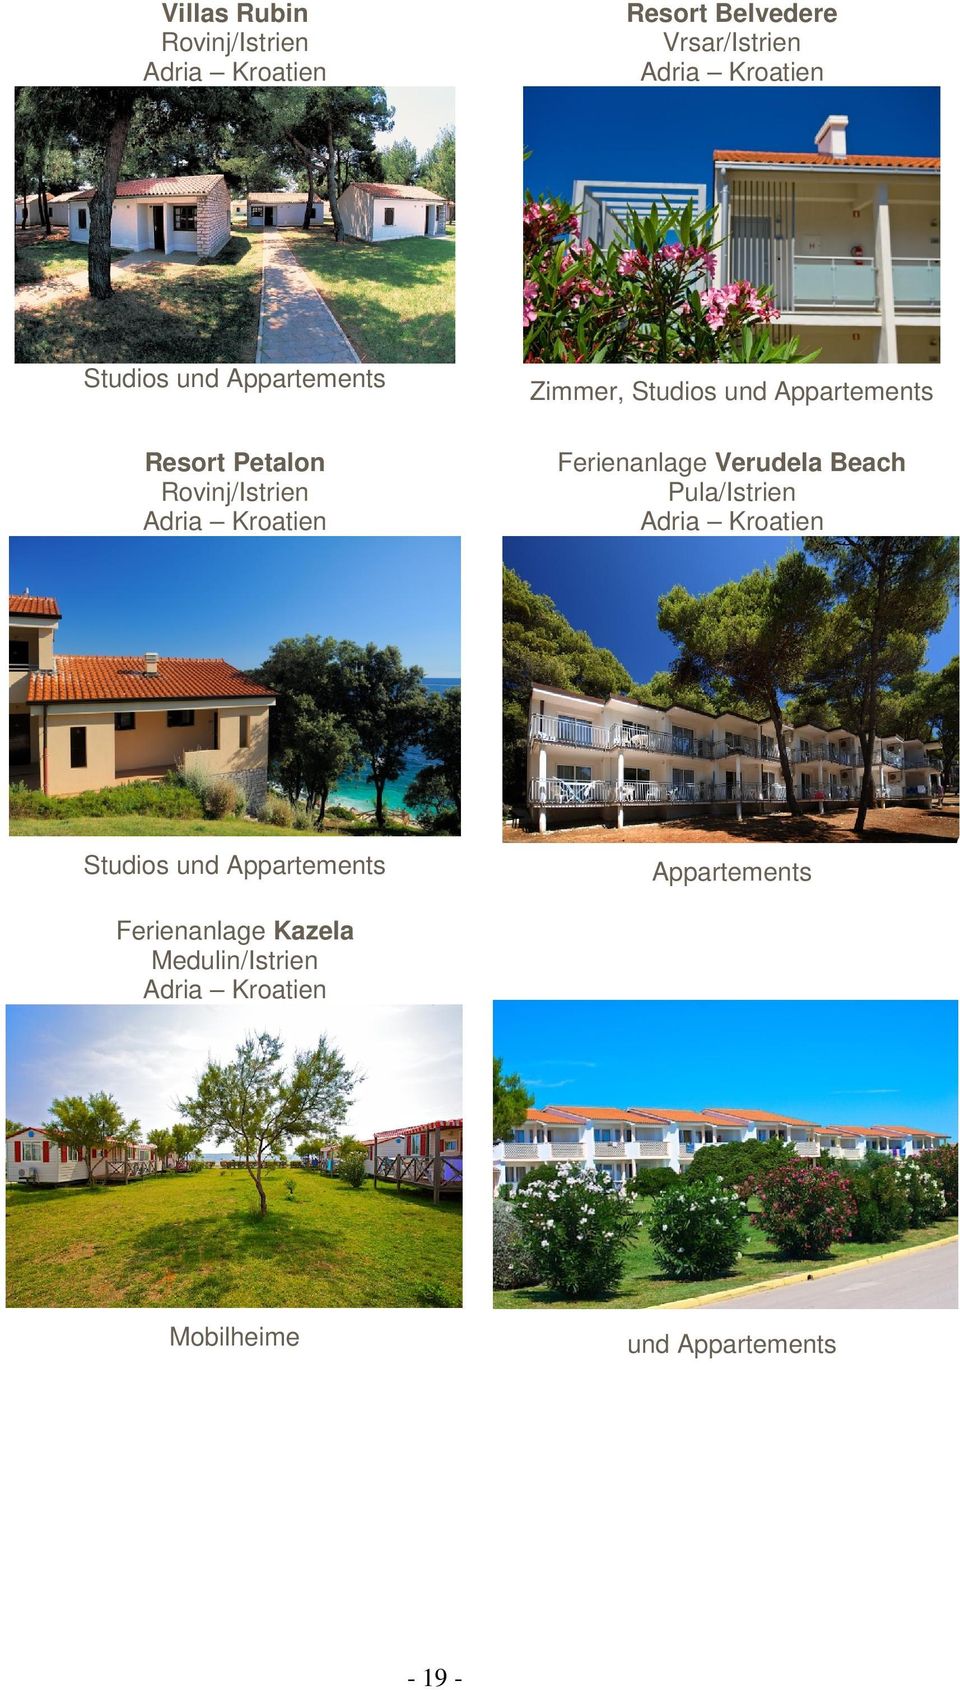 Appartements Ferienanlage Verudela Beach Pula/Istrien Adria Kroatien Studios und